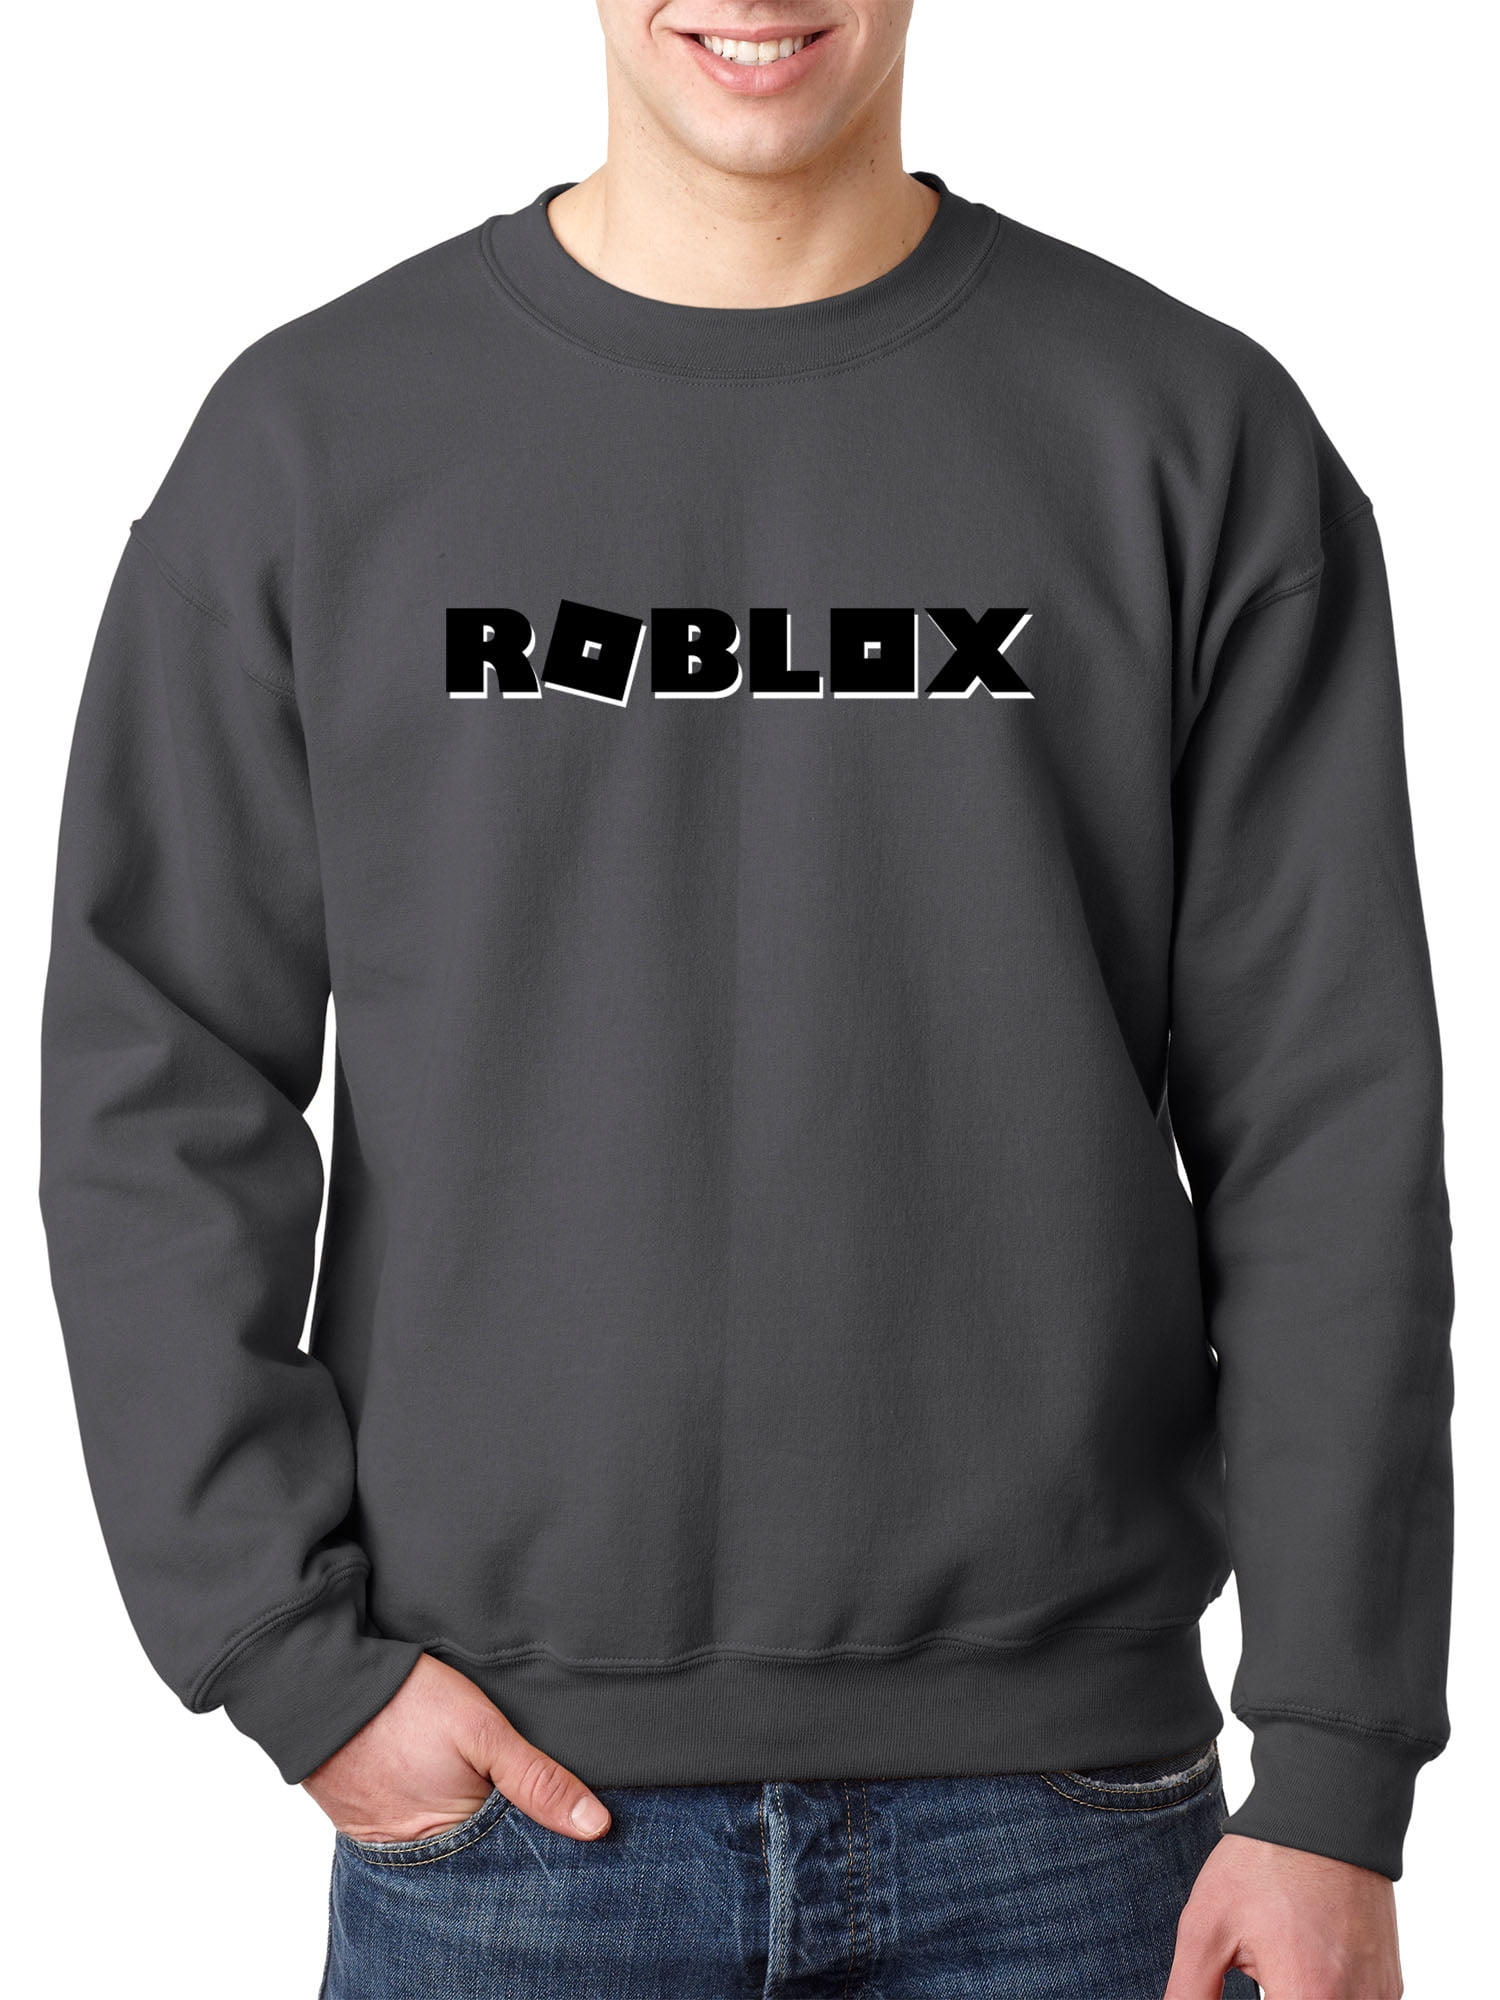 New Way 1168 Crewneck Roblox Block Logo Game Accent Sweatshirt Xl Charcoal Walmart Com - roblox xl